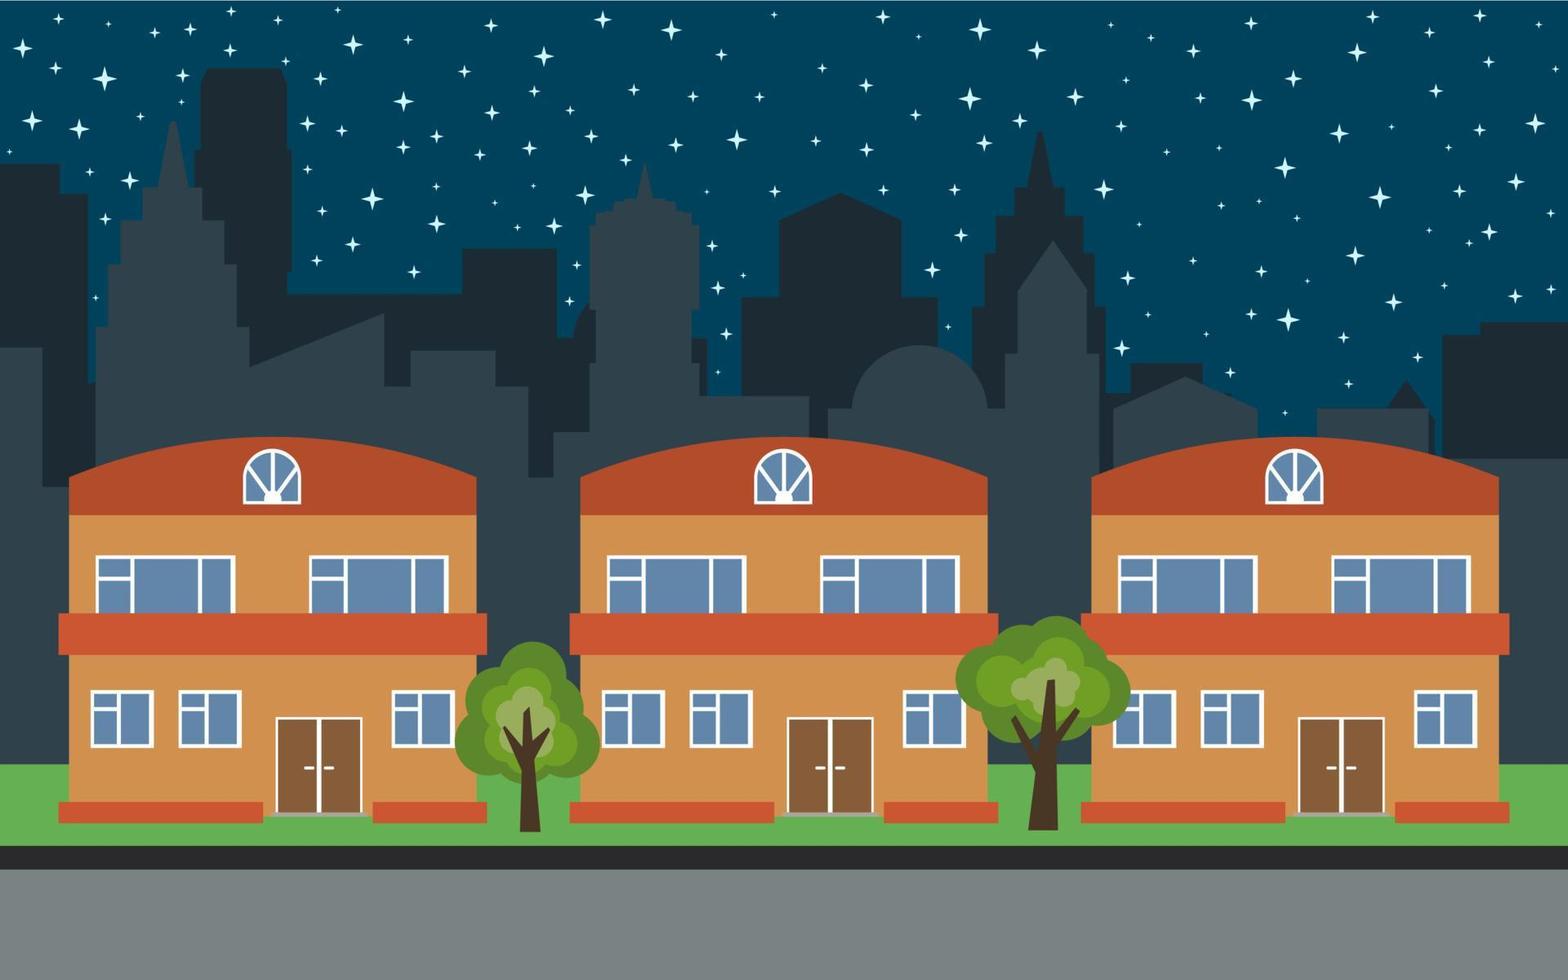 ciudad vectorial con tres casas de dibujos animados de dos pisos y árboles verdes por la noche. paisaje urbano de verano. vista de la calle con paisaje urbano en un fondo vector